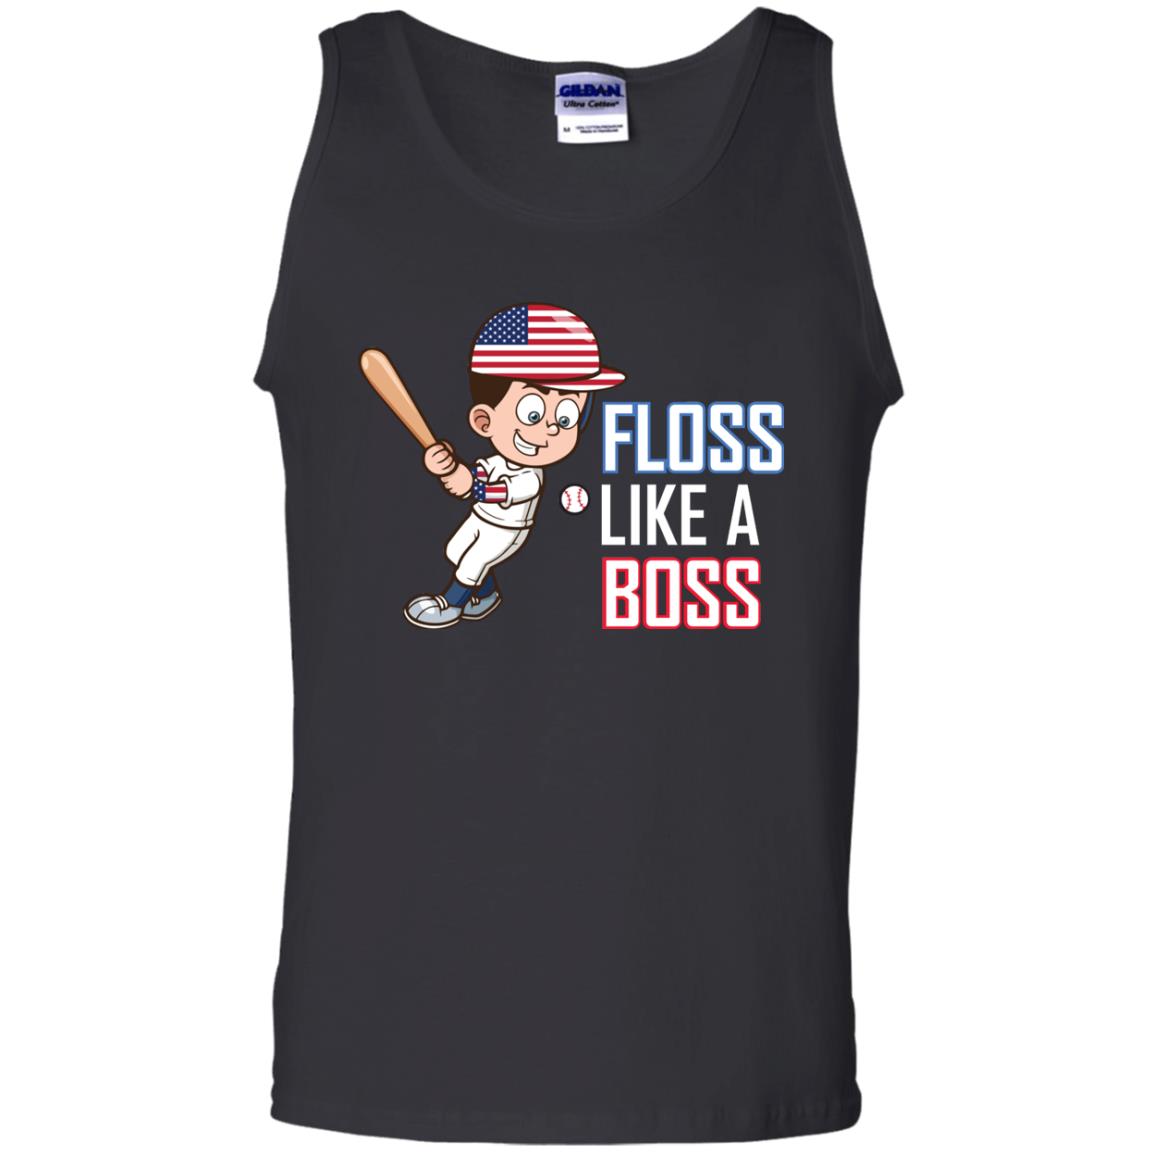 Floss Like A Boss Shirt For Baseball PlayersG220 Gildan 100% Cotton Tank Top